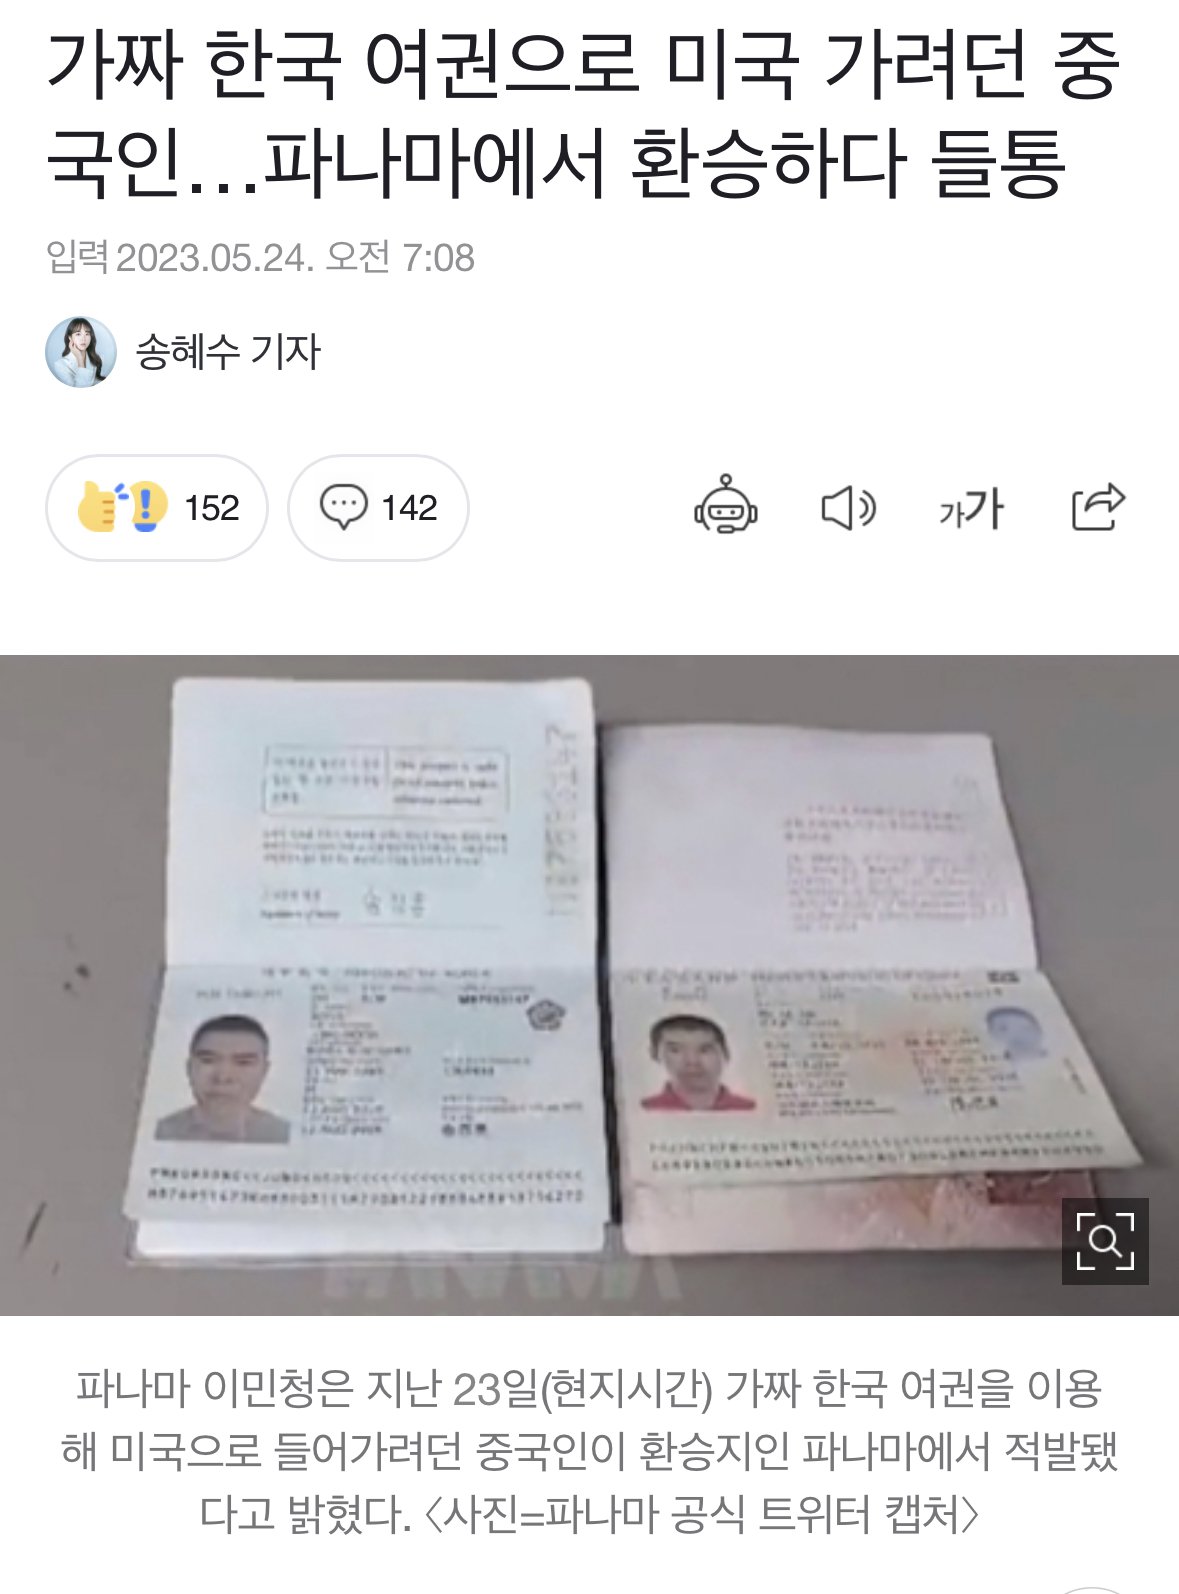 IMG_0389.jpeg 가짜 한국 여권으로 미국 가려던 중국인